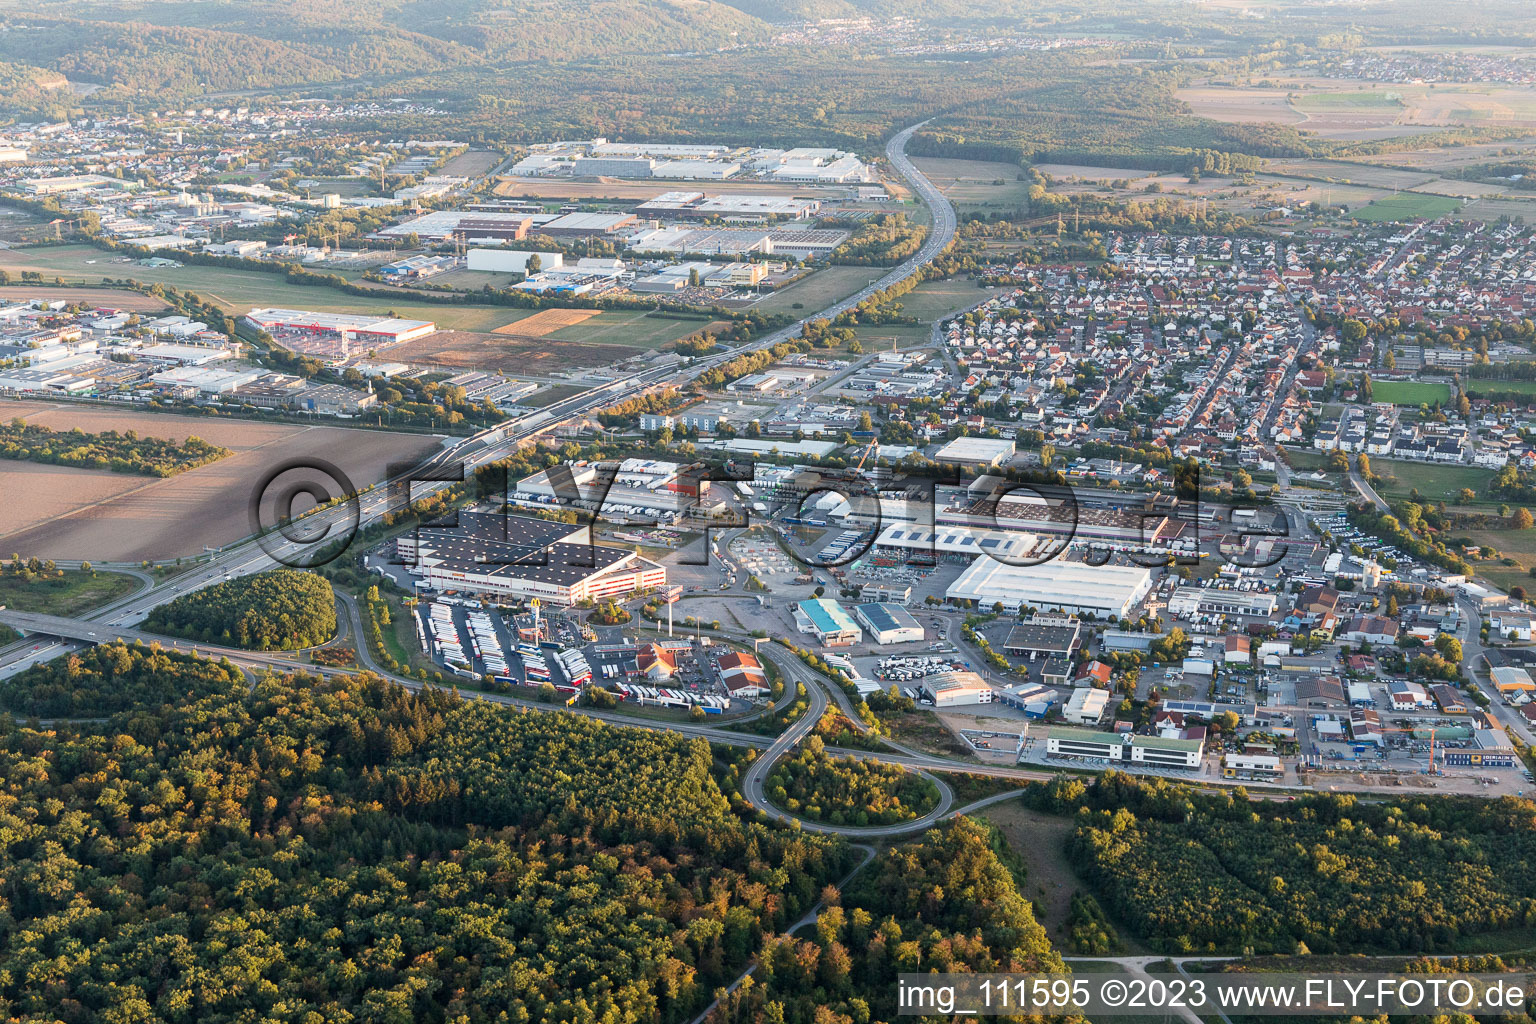 Vue aérienne de Quartier Karlsdorf in Karlsdorf-Neuthard dans le département Bade-Wurtemberg, Allemagne